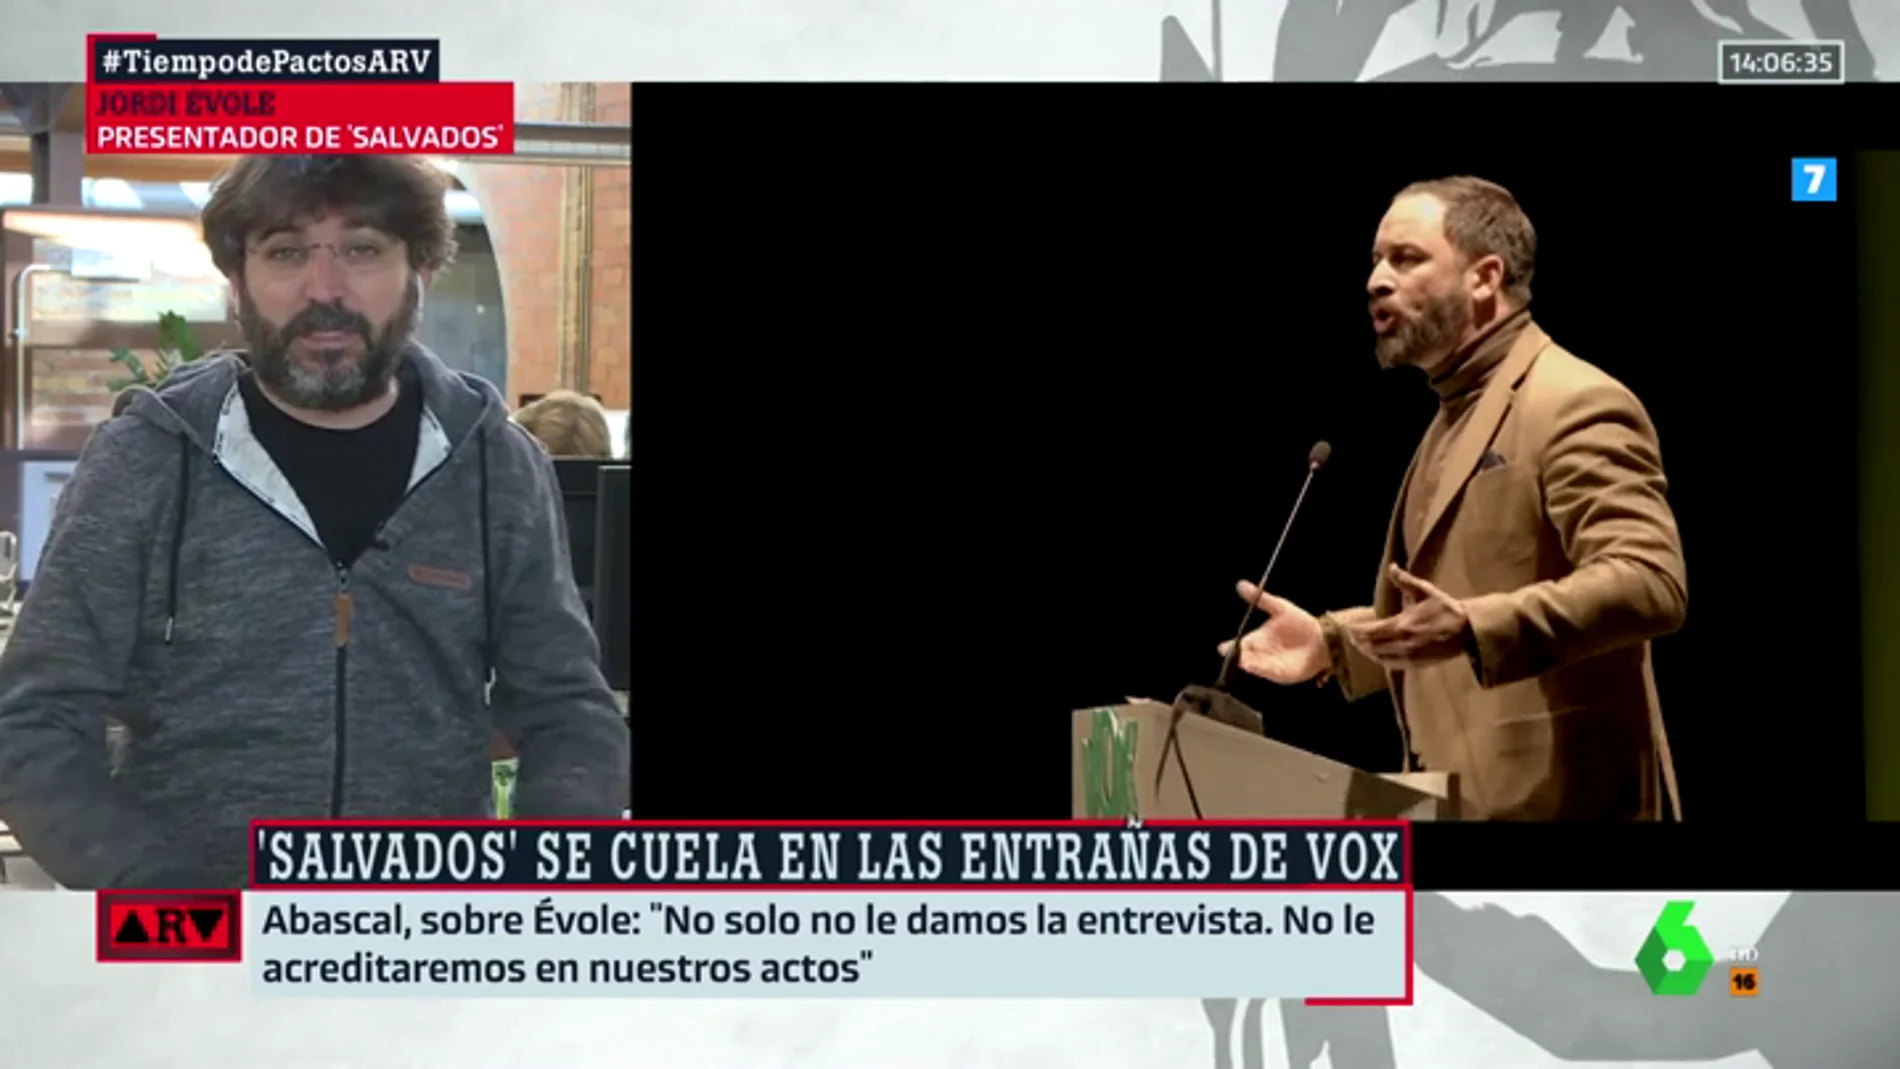 Jordi Évole: "Este no será un programa 'antivox'. Es arriesgado, pero pensamos que con el ataque foribundo no se consigue mucha cosa"